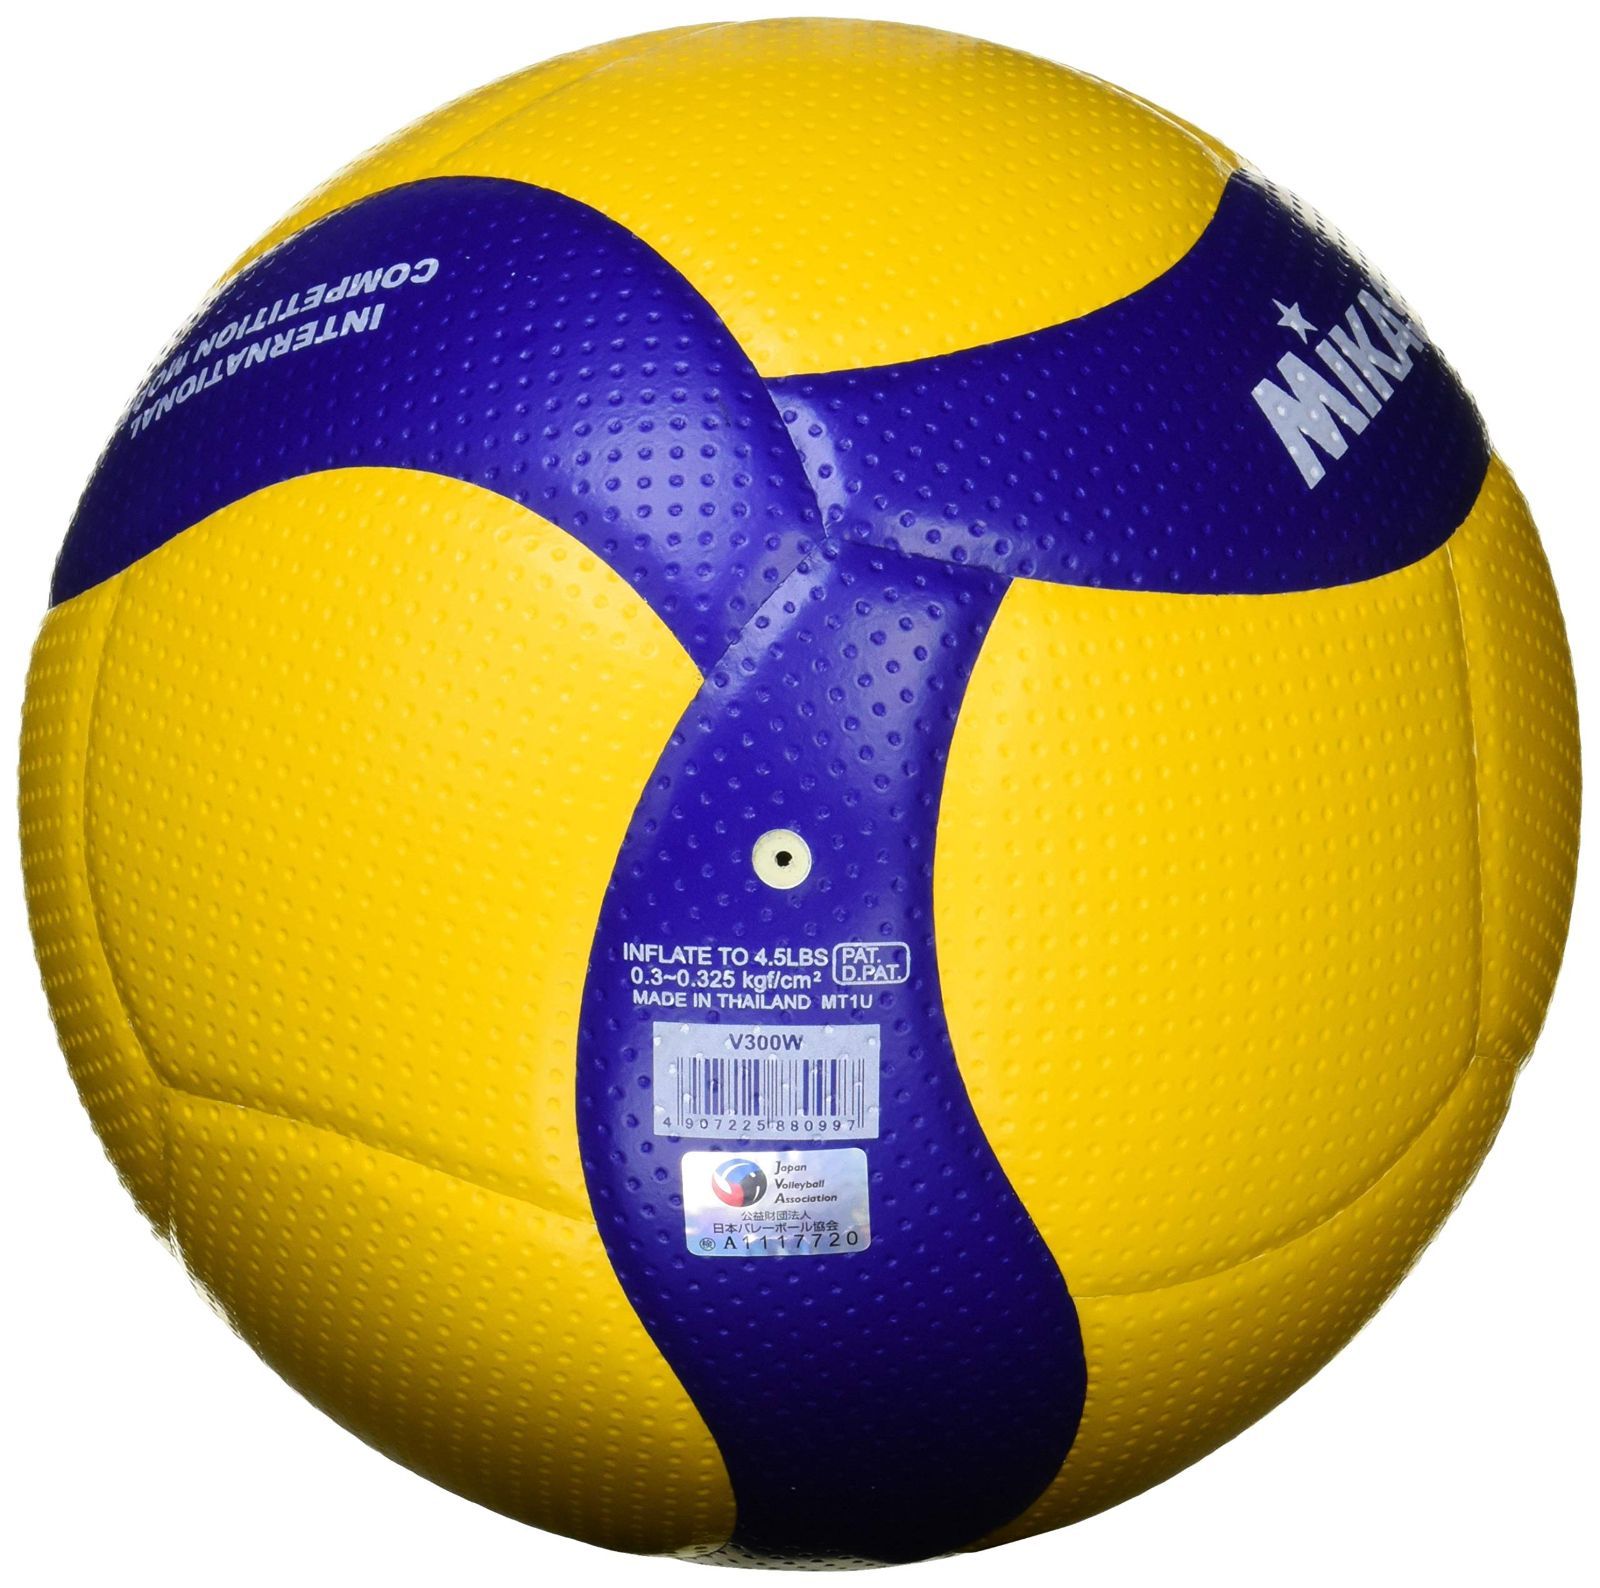 ミカサ バレーボール 5号球 国際公認球 検定球 V200W MIKASA 高校 大学 